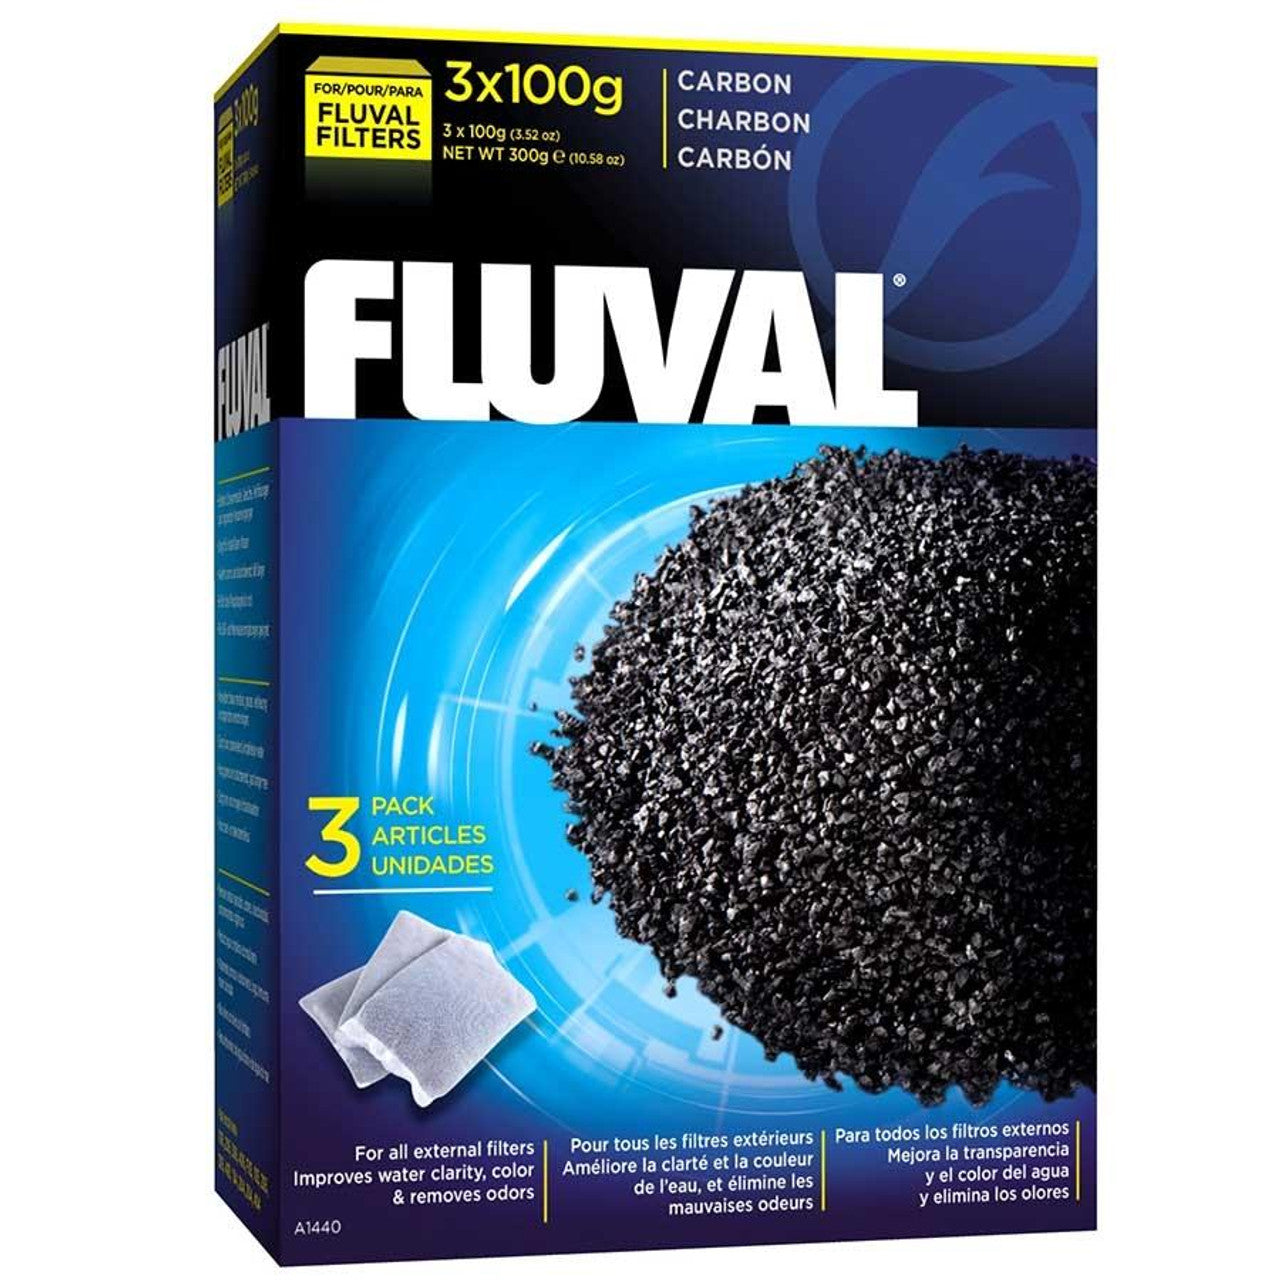 Fluval Carbon for aquarium filter